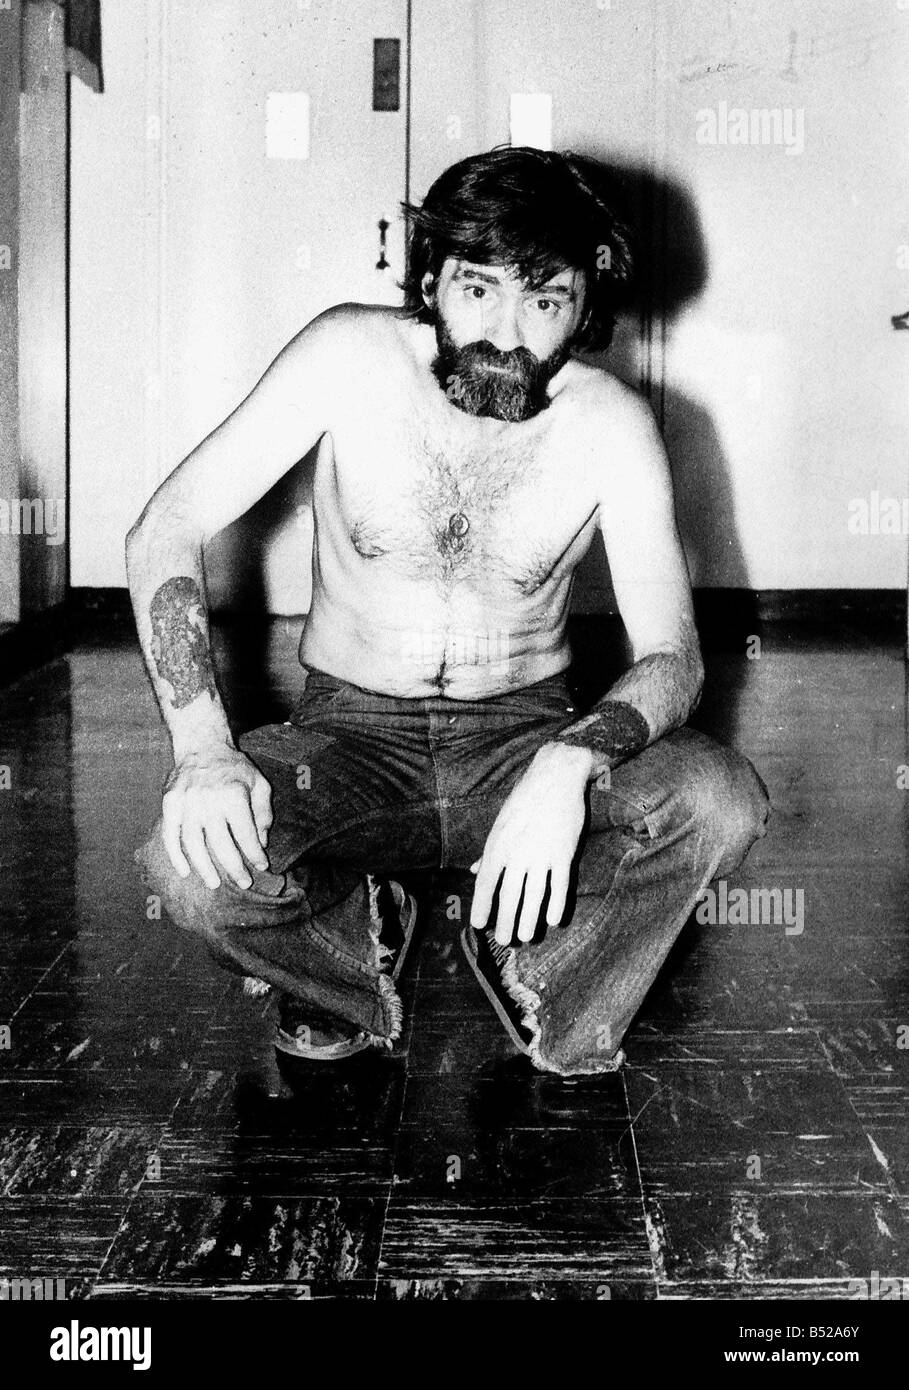 Charles Manson amerikanischen dessen Nachfolger verpflichtet eine Reihe von Morden, die Dienst am Leben Satz in einem kalifornischen Gefängnis USA Stockfoto